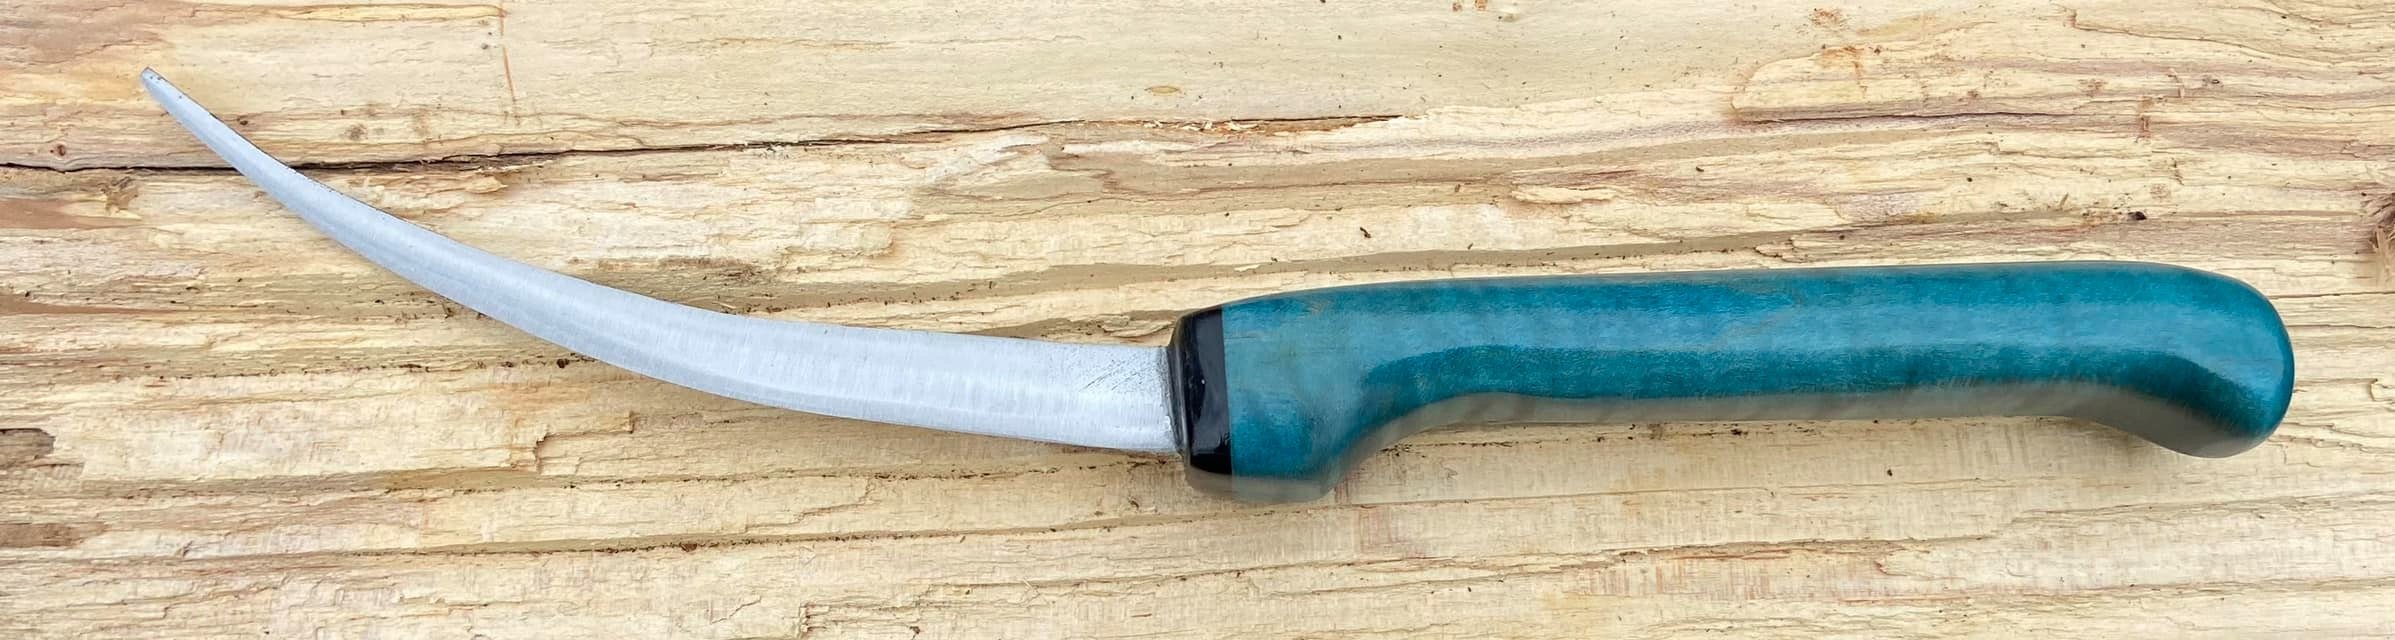 NC Knife Maker Forge -2 Burner